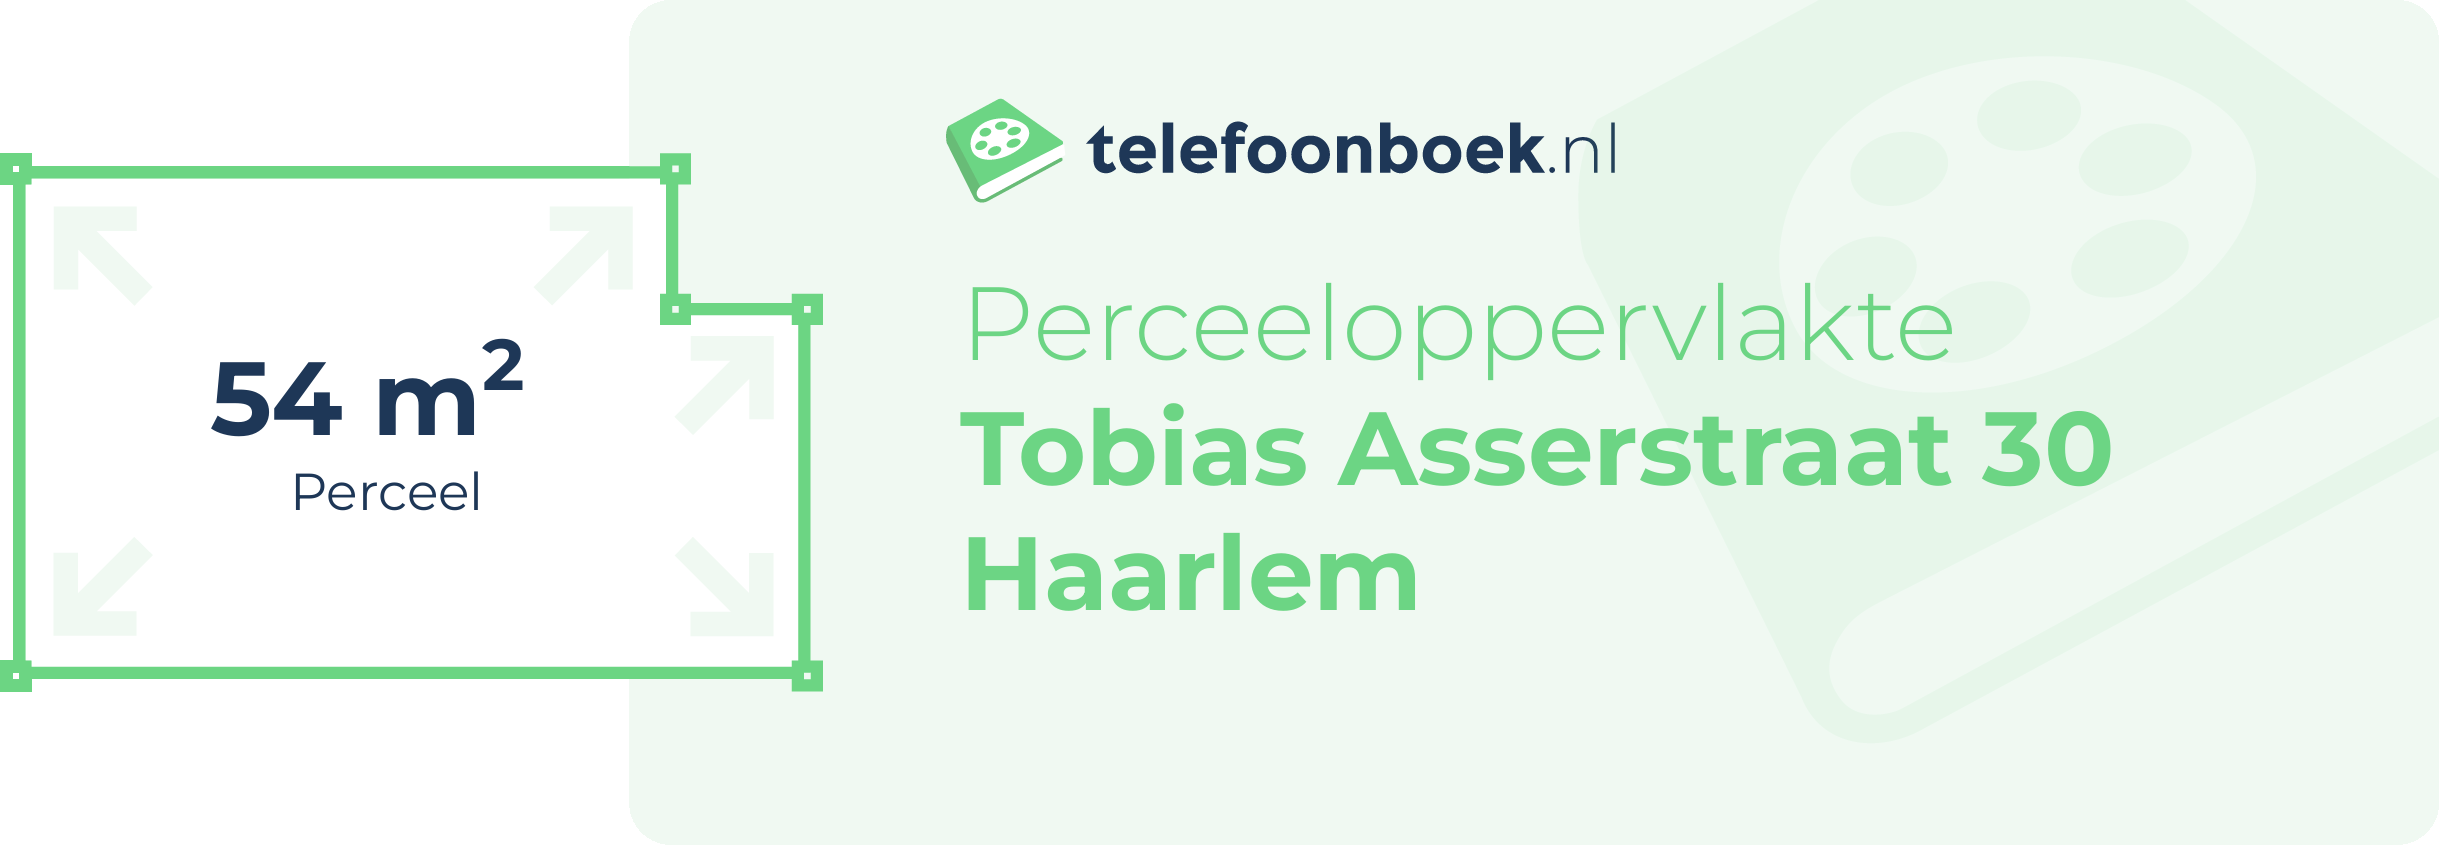 Perceeloppervlakte Tobias Asserstraat 30 Haarlem